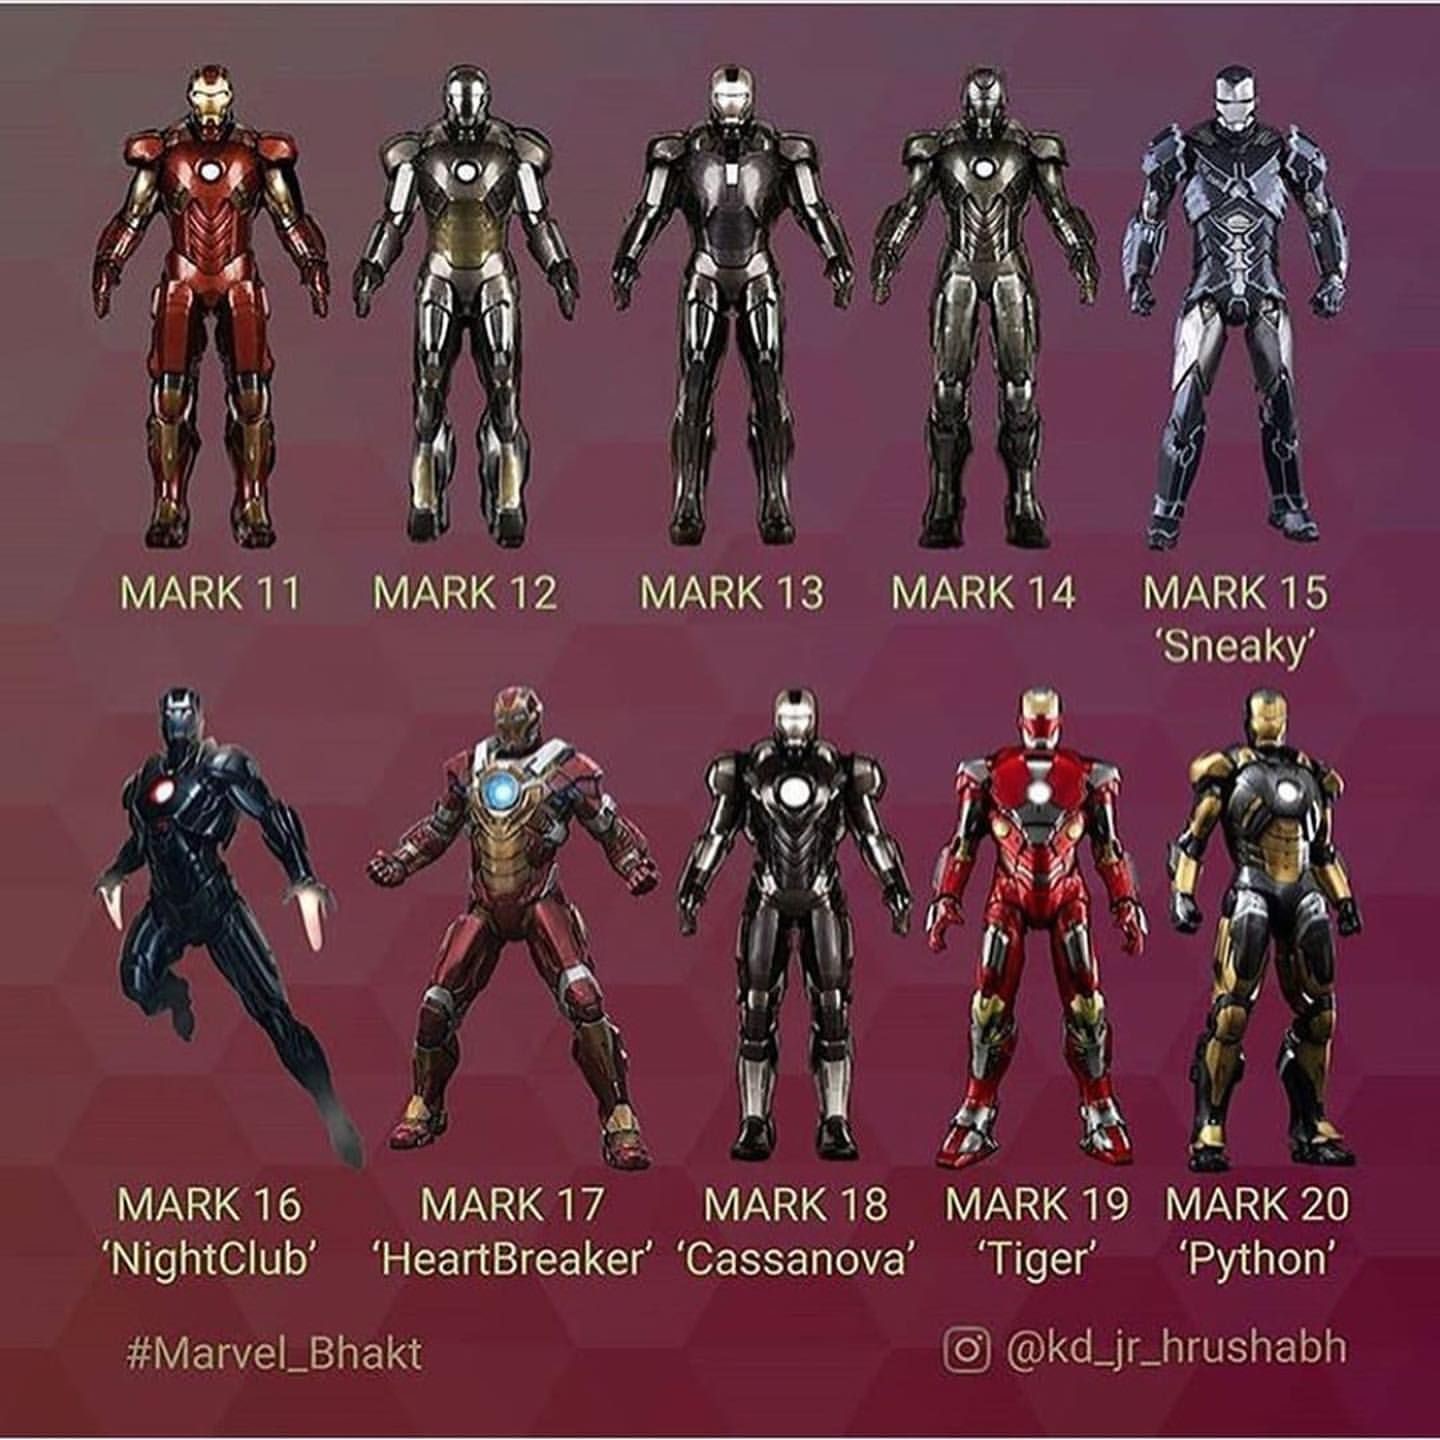 Every Iron Man Armor